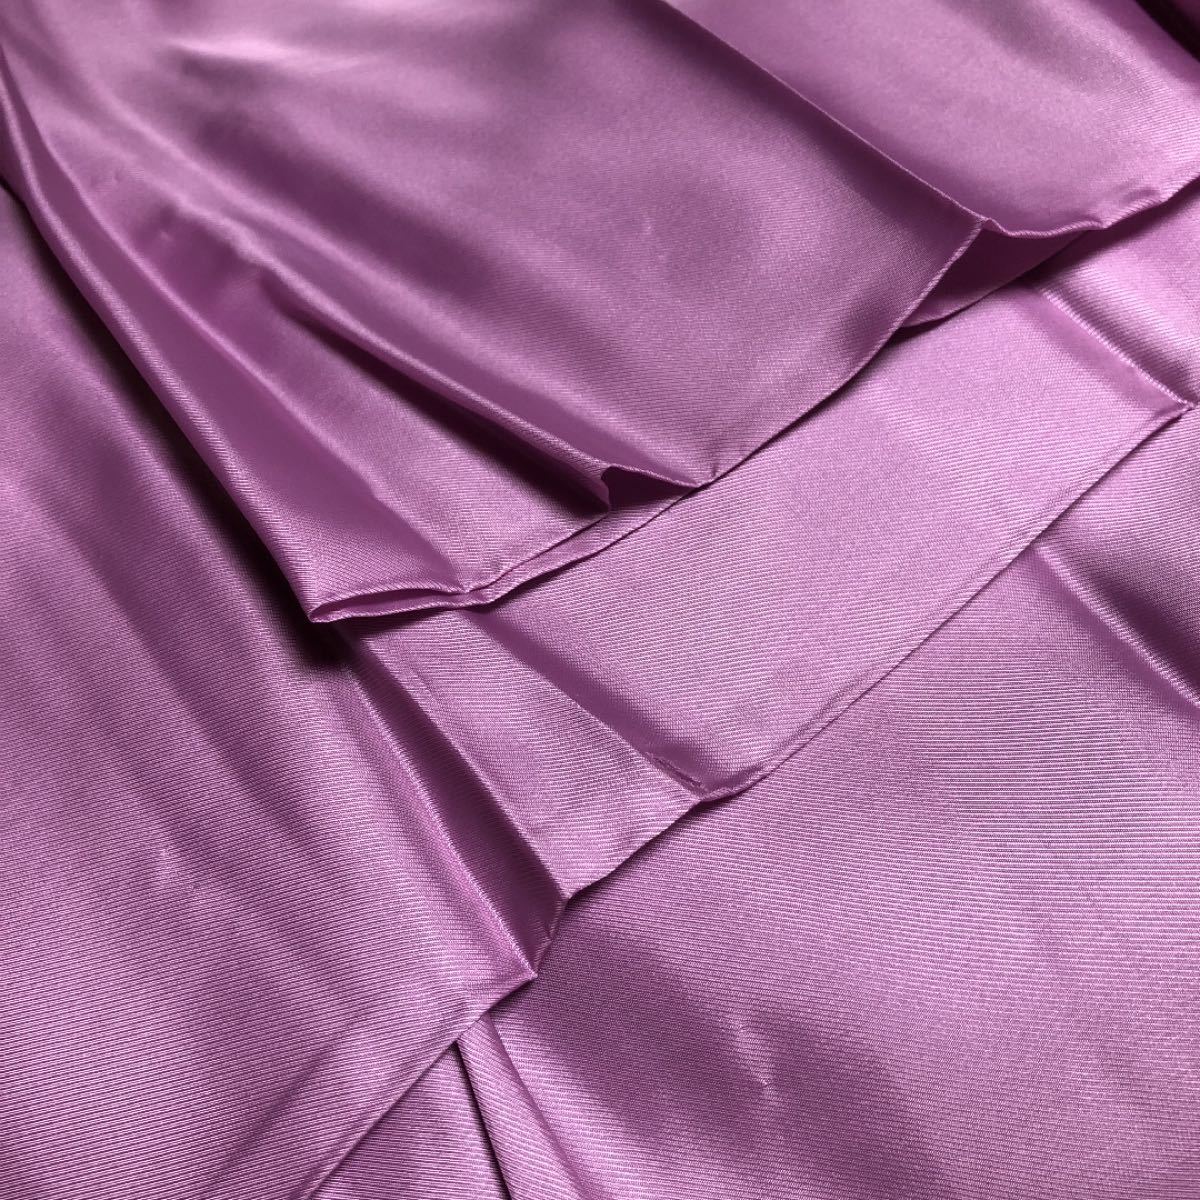 Paypayフリマ 紫色系 ピンクがかった紫色裏地生地 化繊生地 ハンドメイド素材 八掛にも